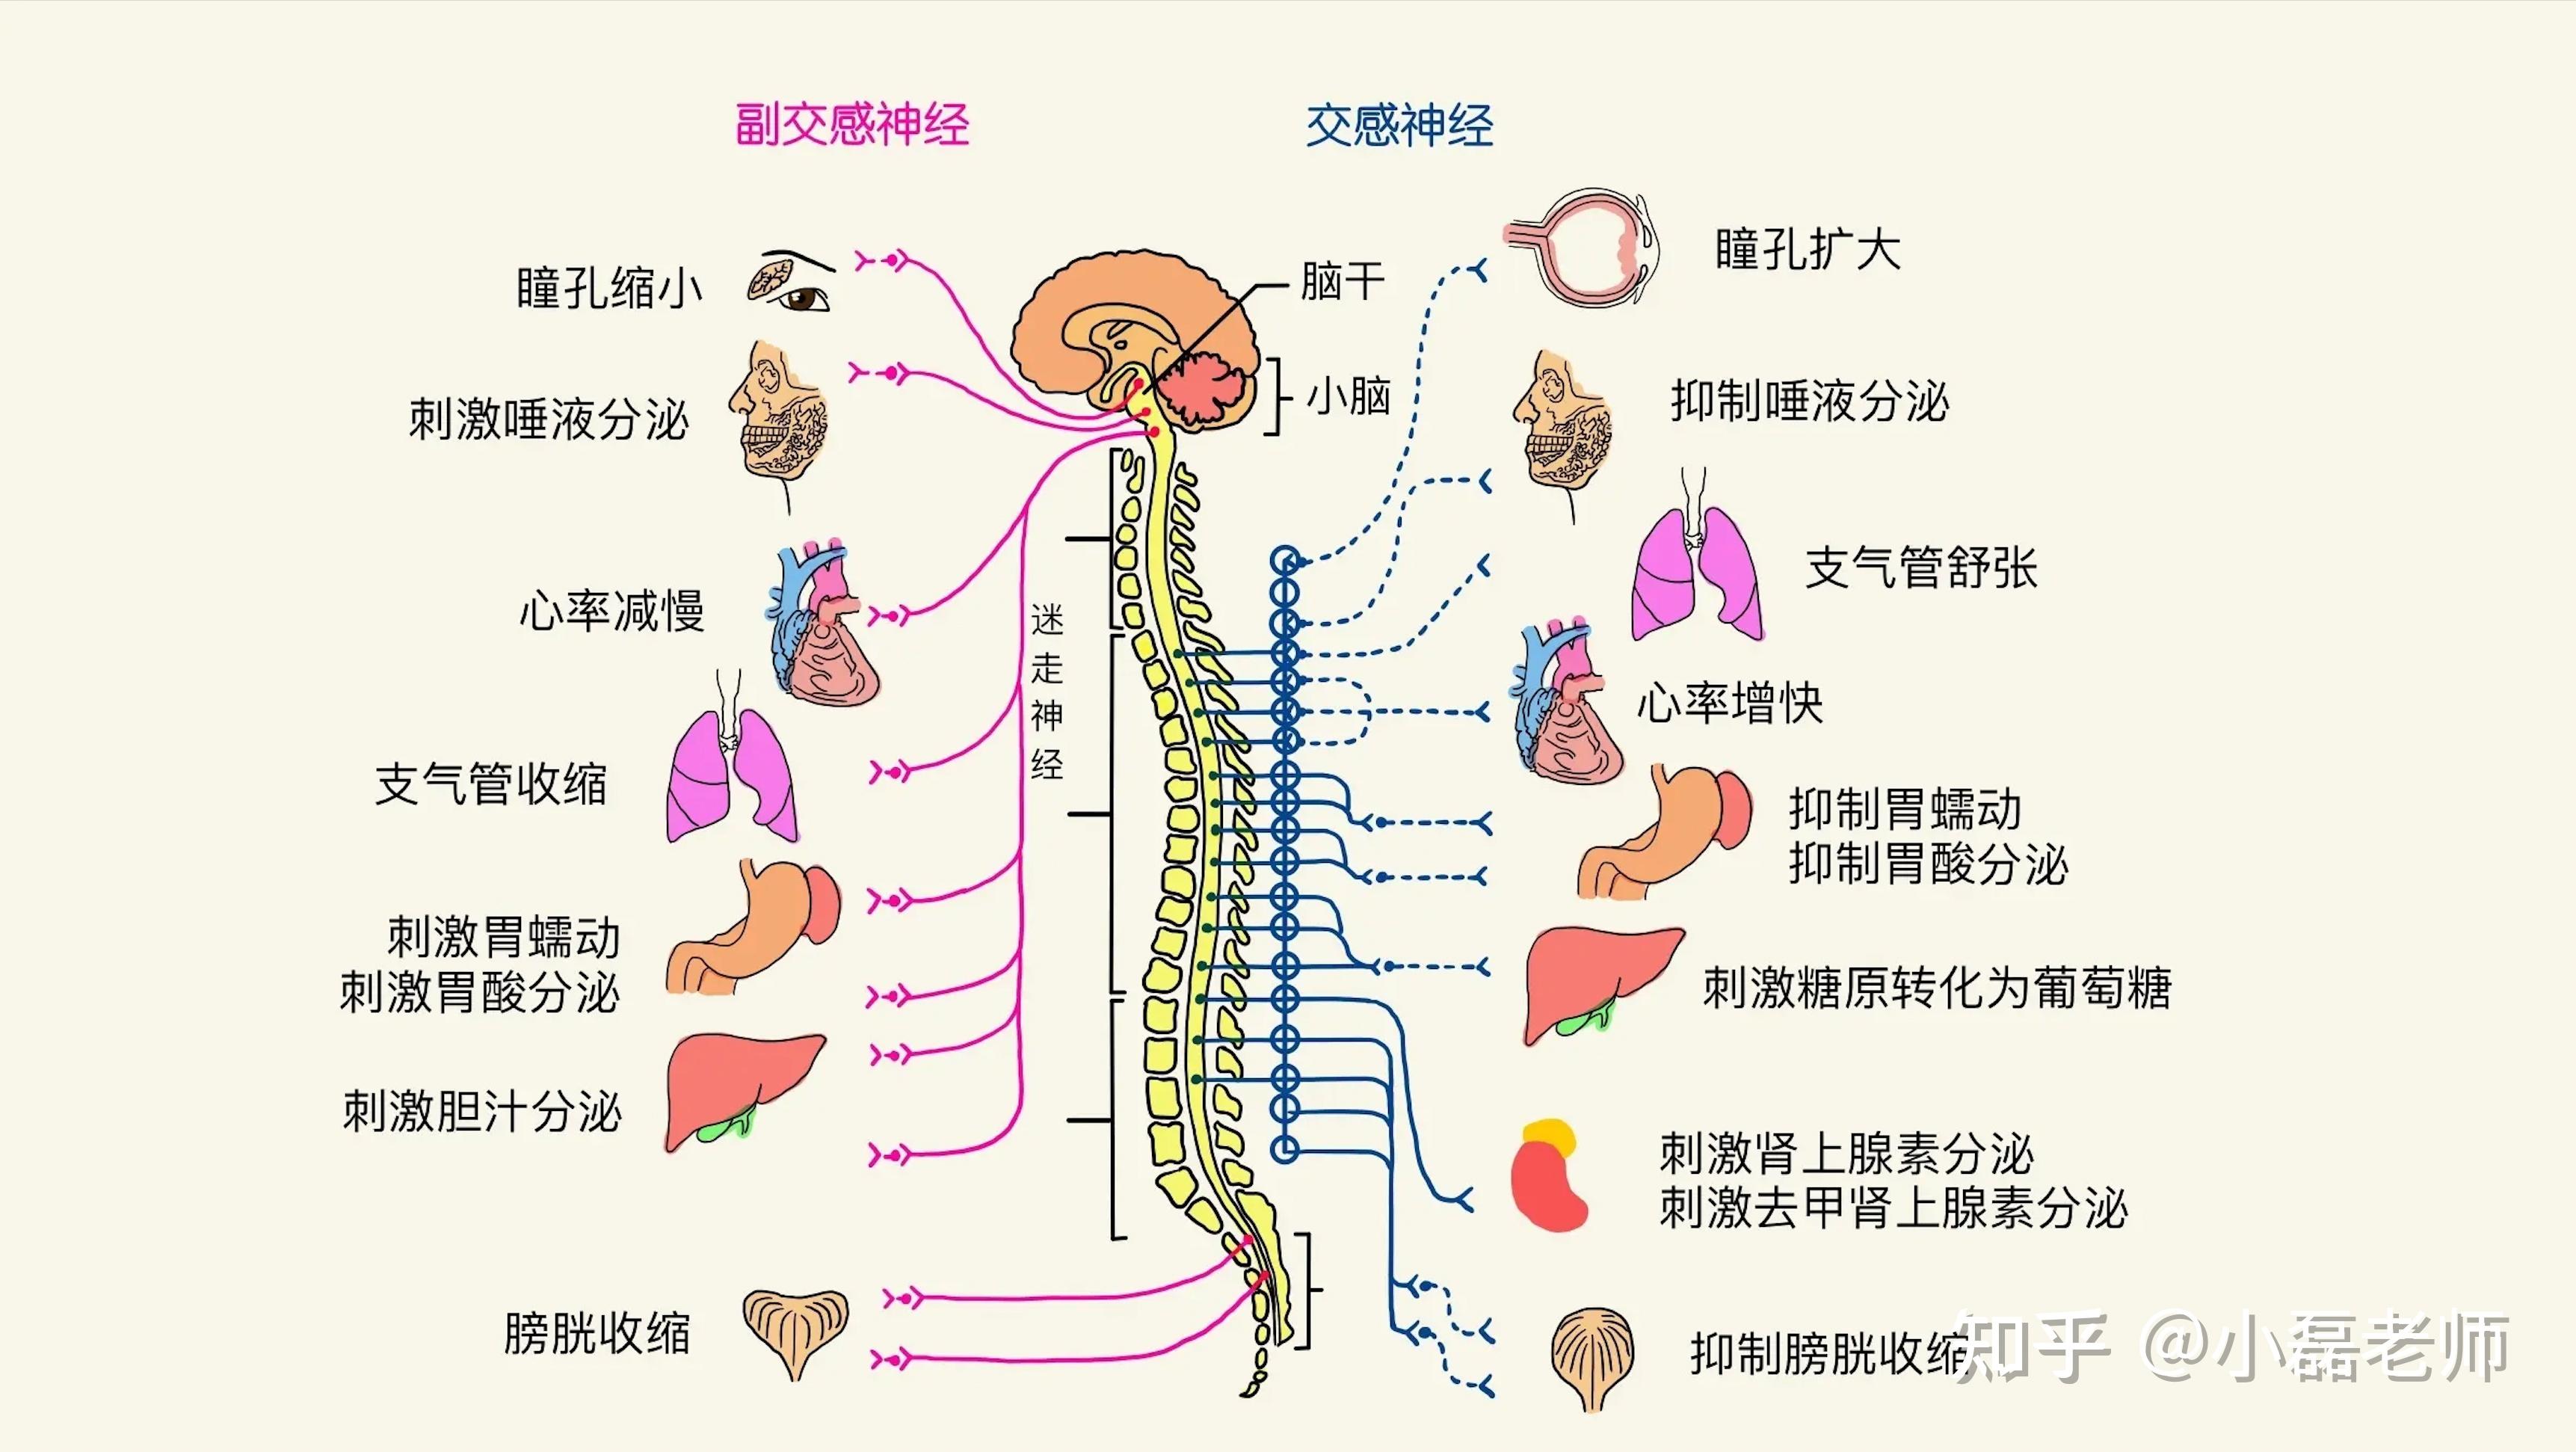 副交感神经系统 (psns)交感神经系统 (sns)自主神经系统由两个分支